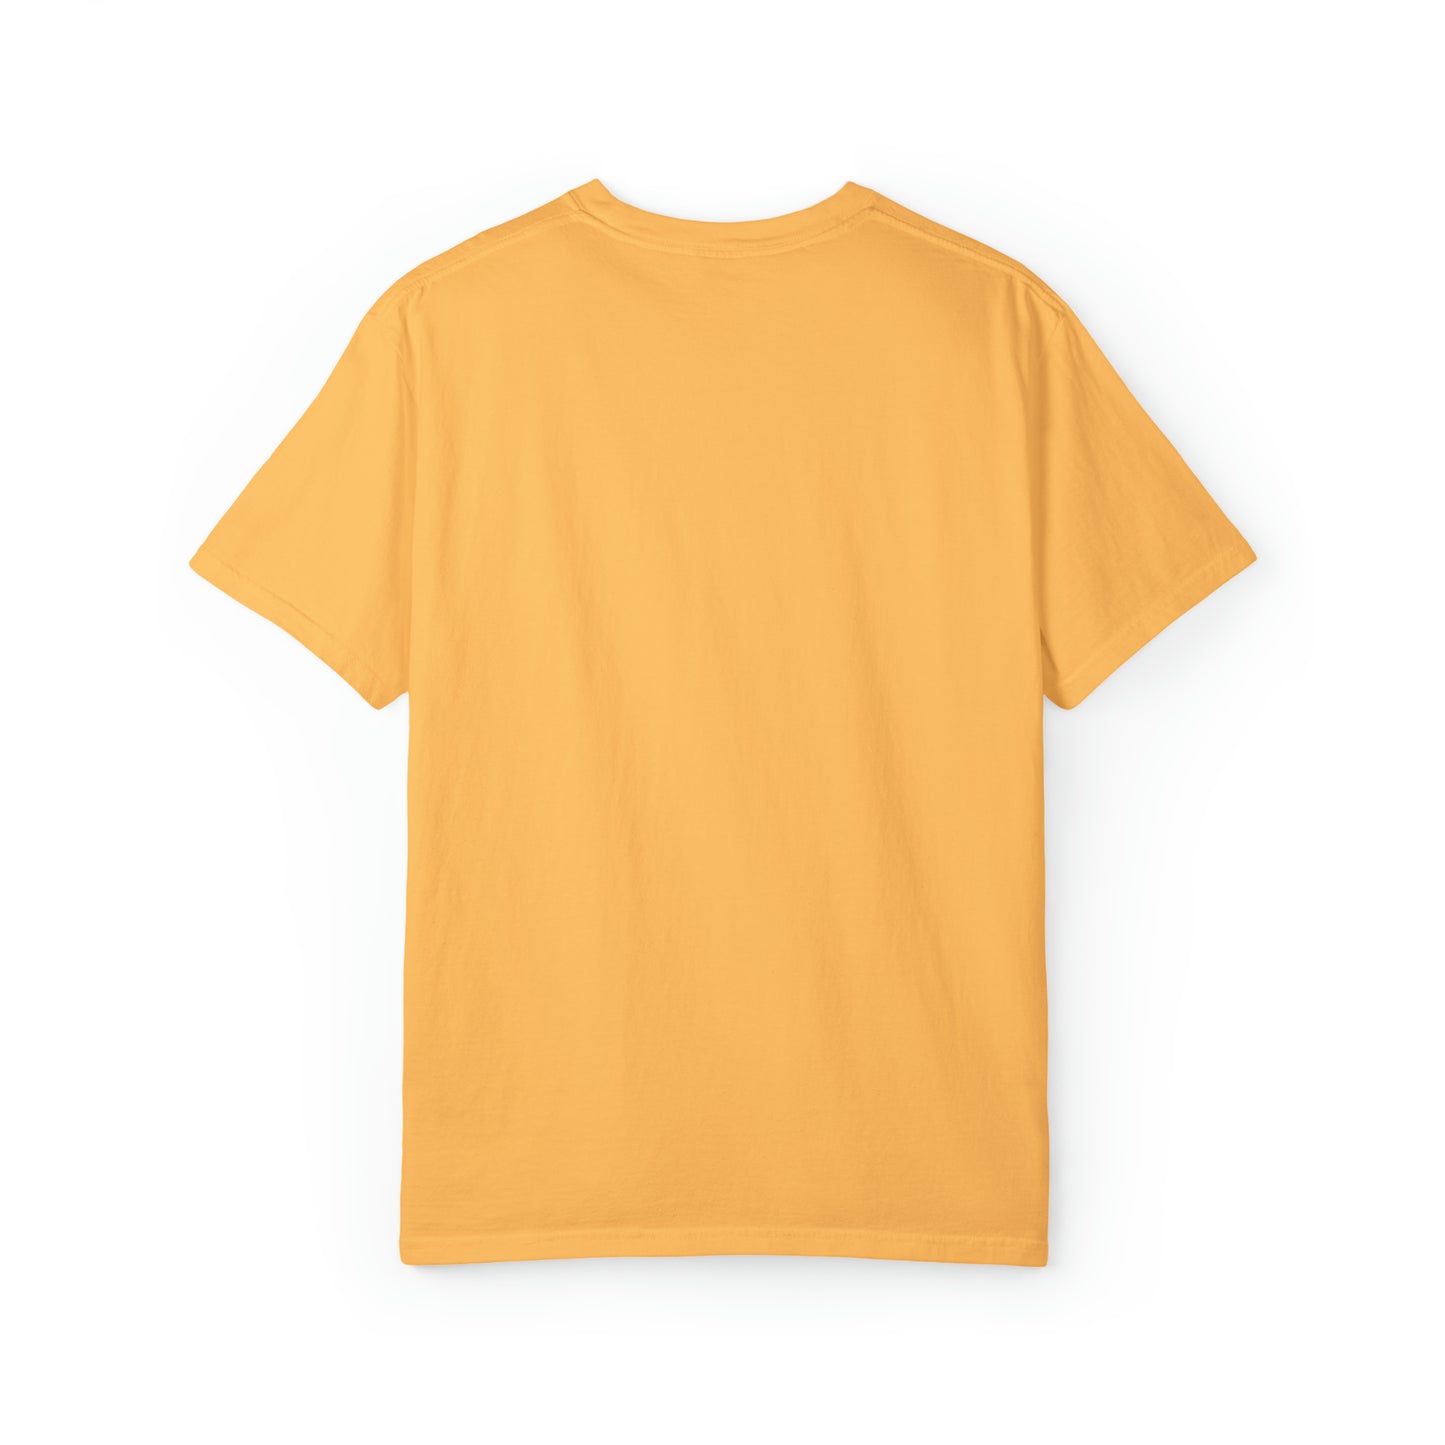 Nostrich Unisex Garment-Dyed T-shirt